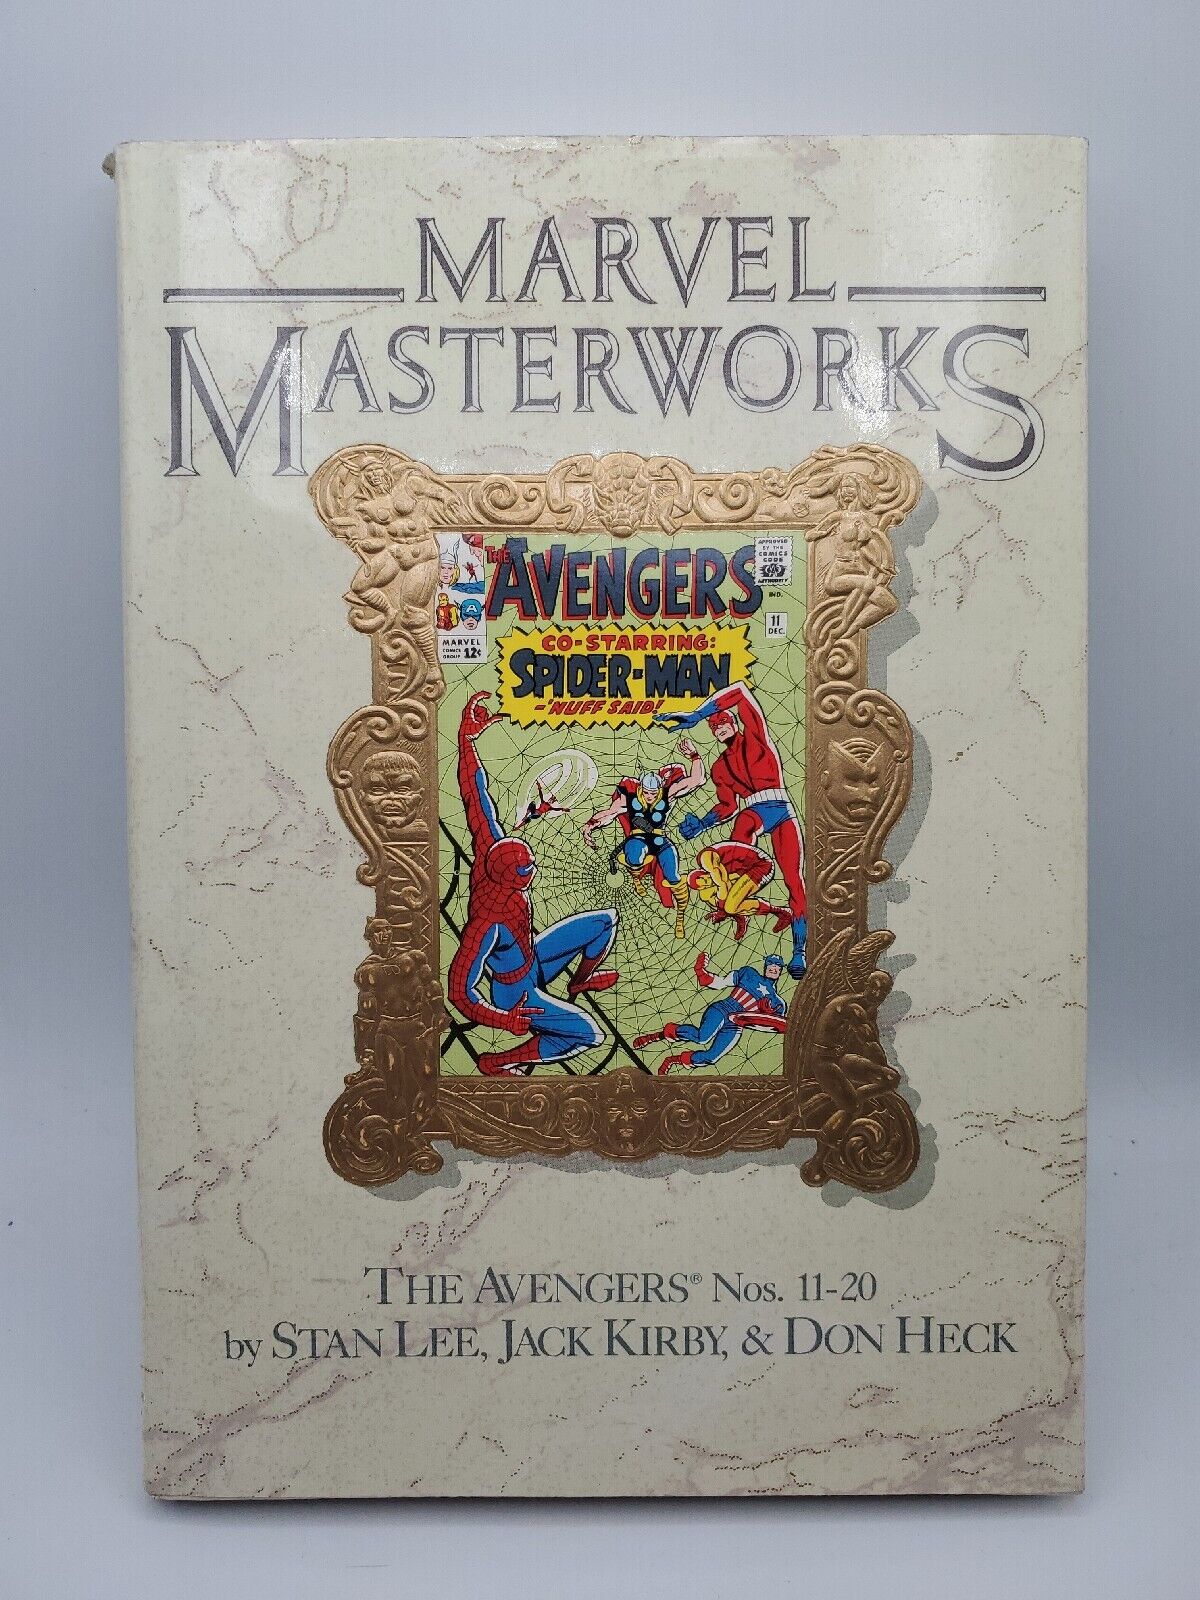 Marvel Masterworks #9 (Marvel, September 1989)